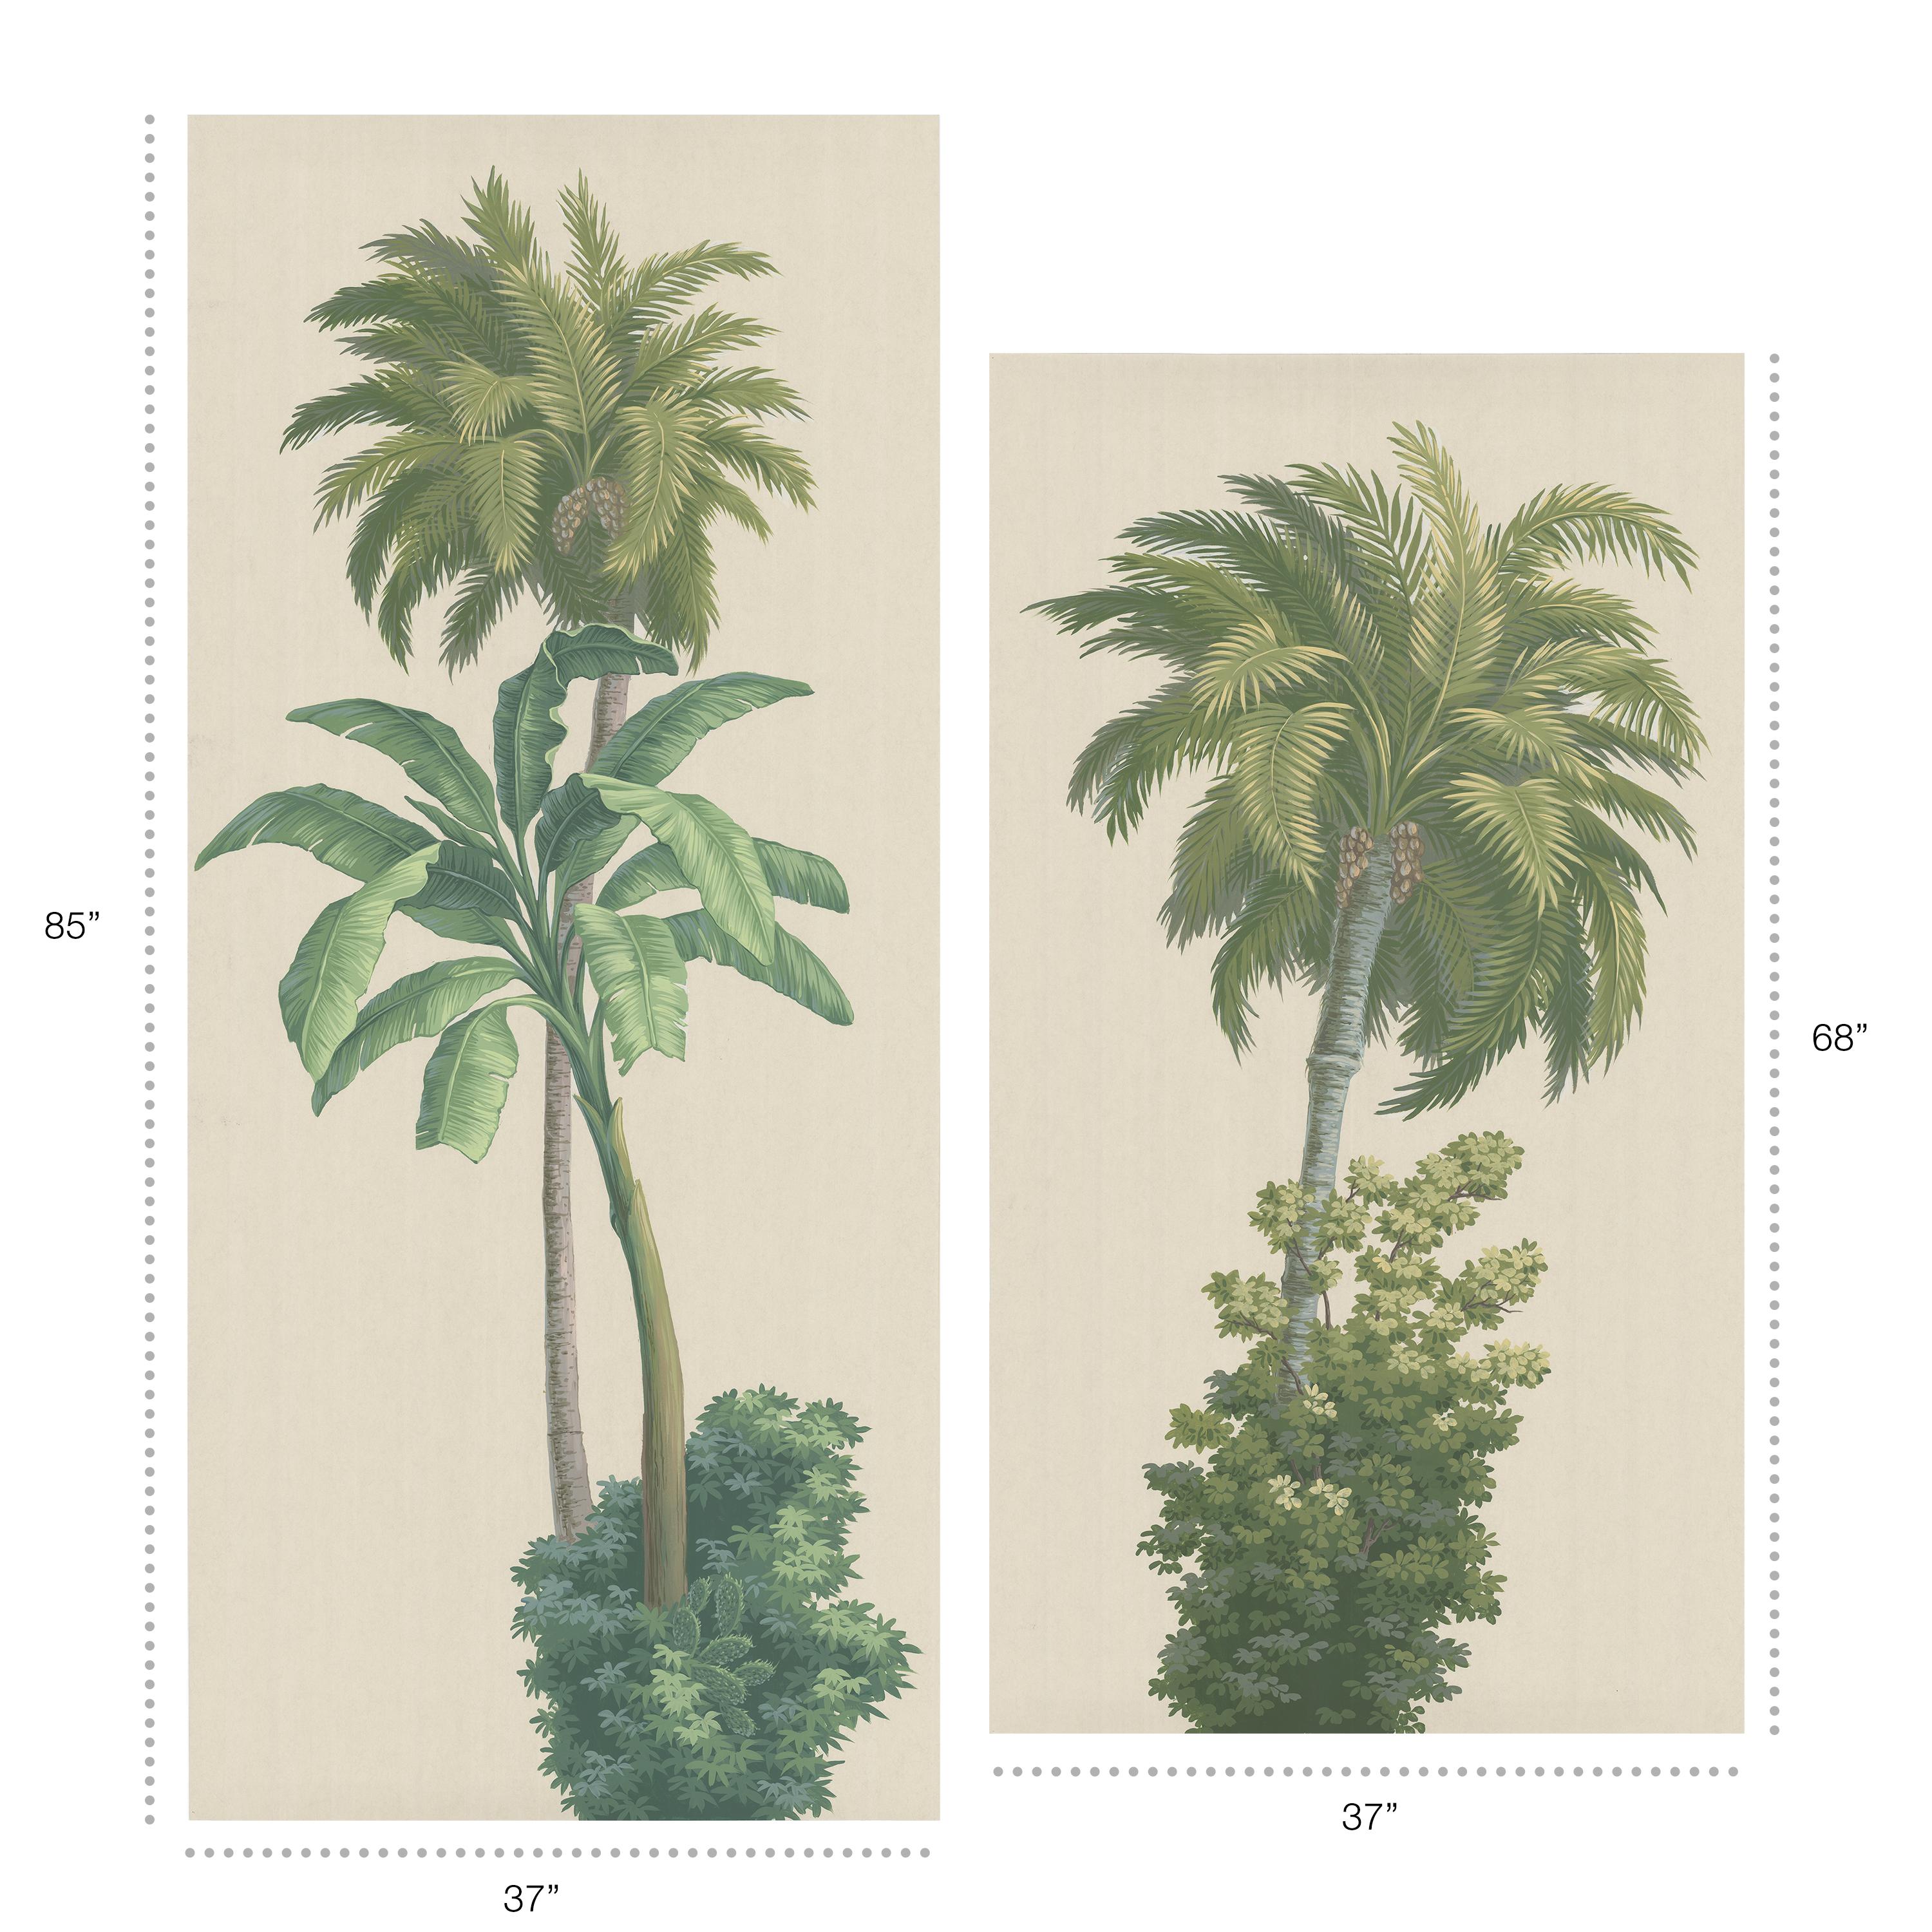 Dieses Paar von Kunstwerken zeigt Palmen auf einem soliden sandfarbenen, cremefarbenen Hintergrund.  Jede Tafel ist im Stil des europäischen Holzblocks auf einem Vliespapiergrund handbemalt.  Die Tafeln sind je nach den abgebildeten Bäumen